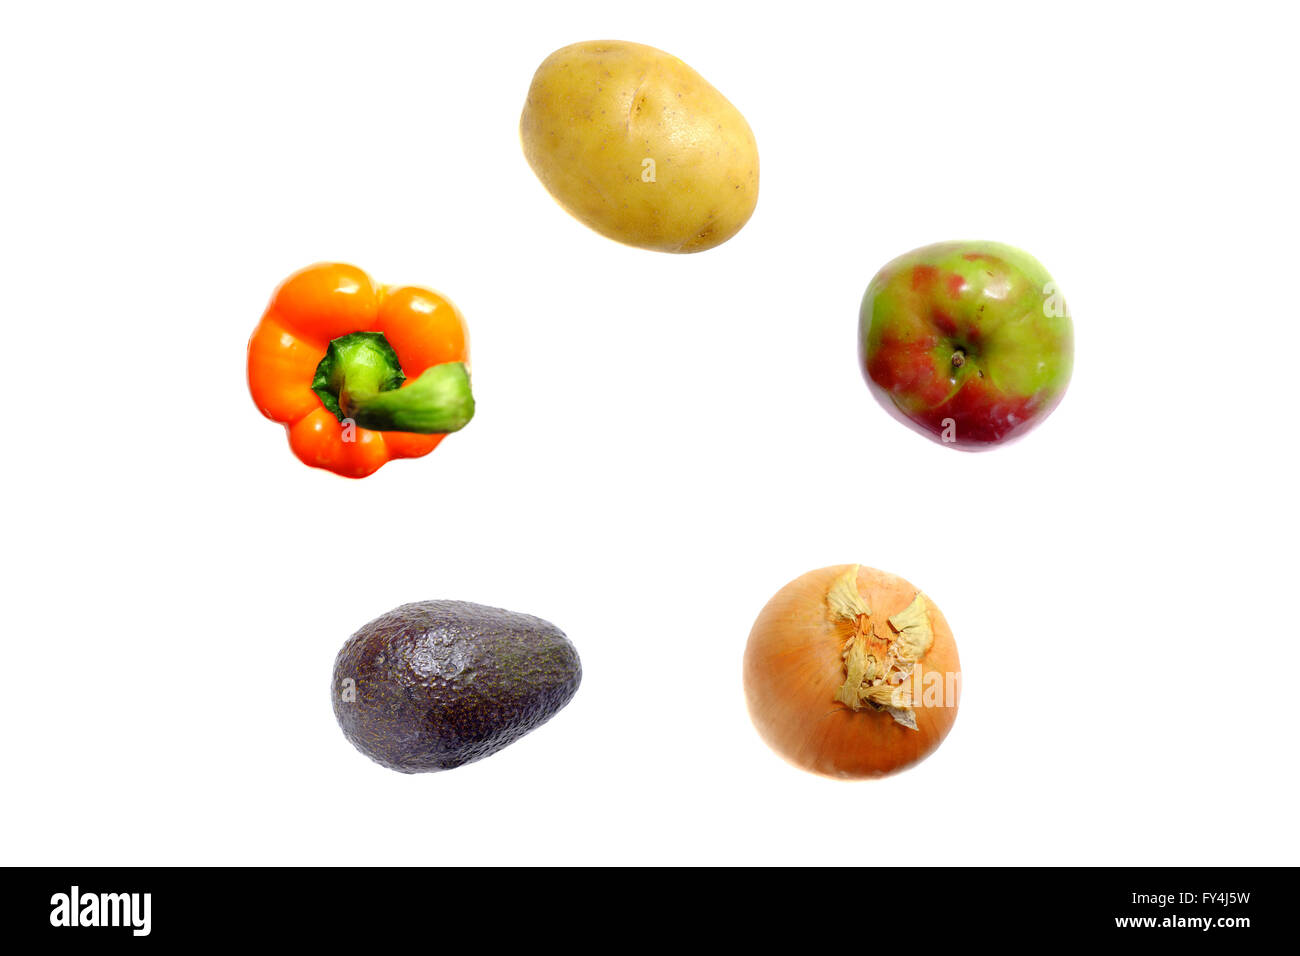 Il Britannico dietetici consigliati sconto del 5 frutta e verdura fotografati contro uno sfondo bianco. Foto Stock